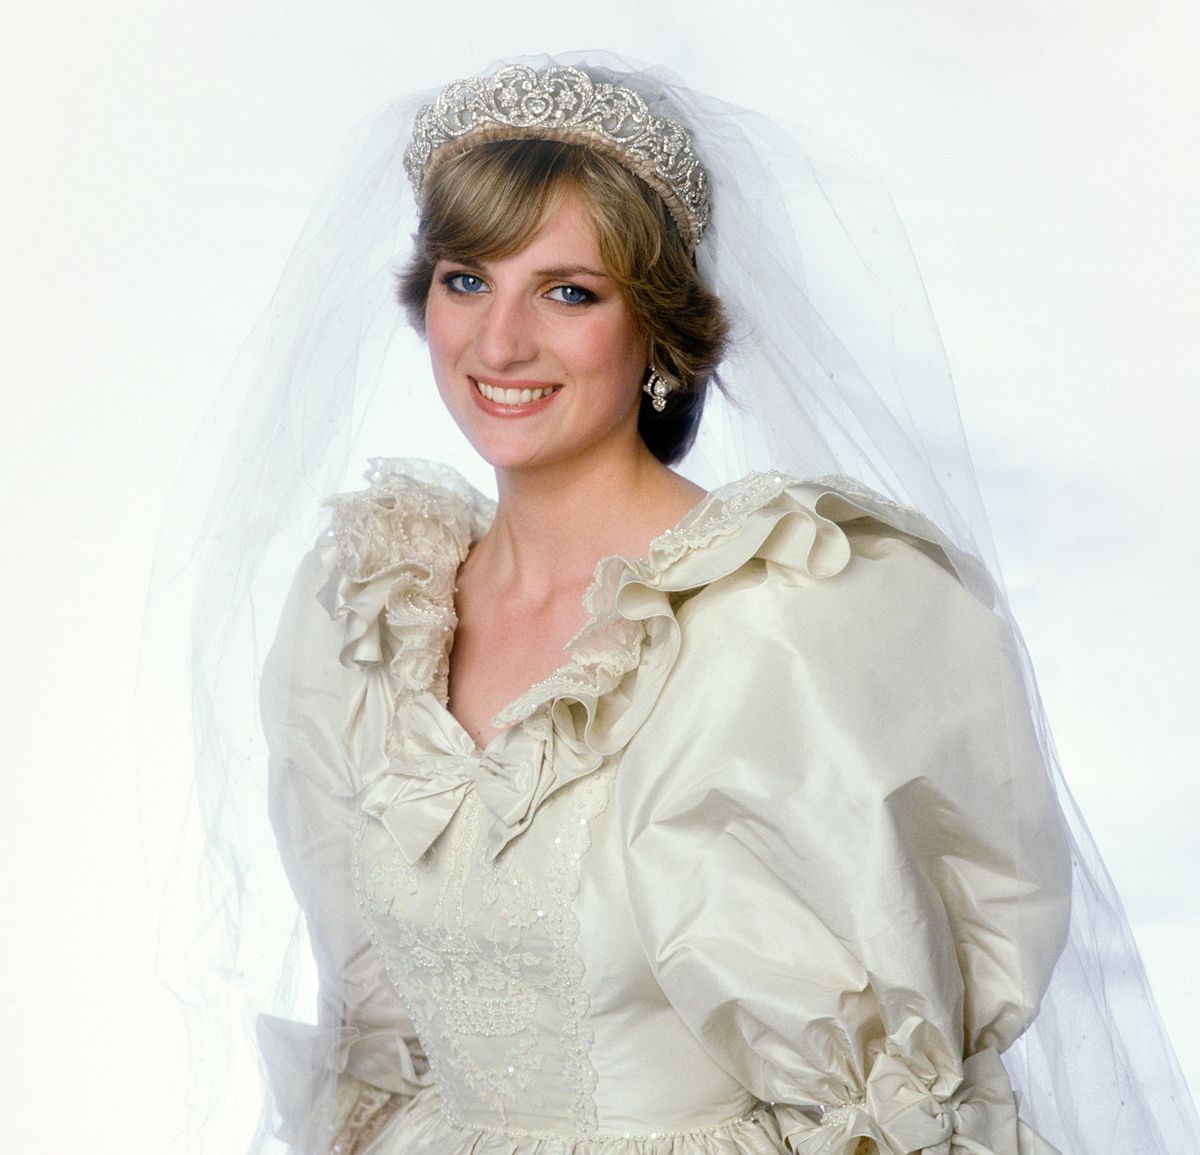 戴安娜王妃在婚礼当天穿着婚纱